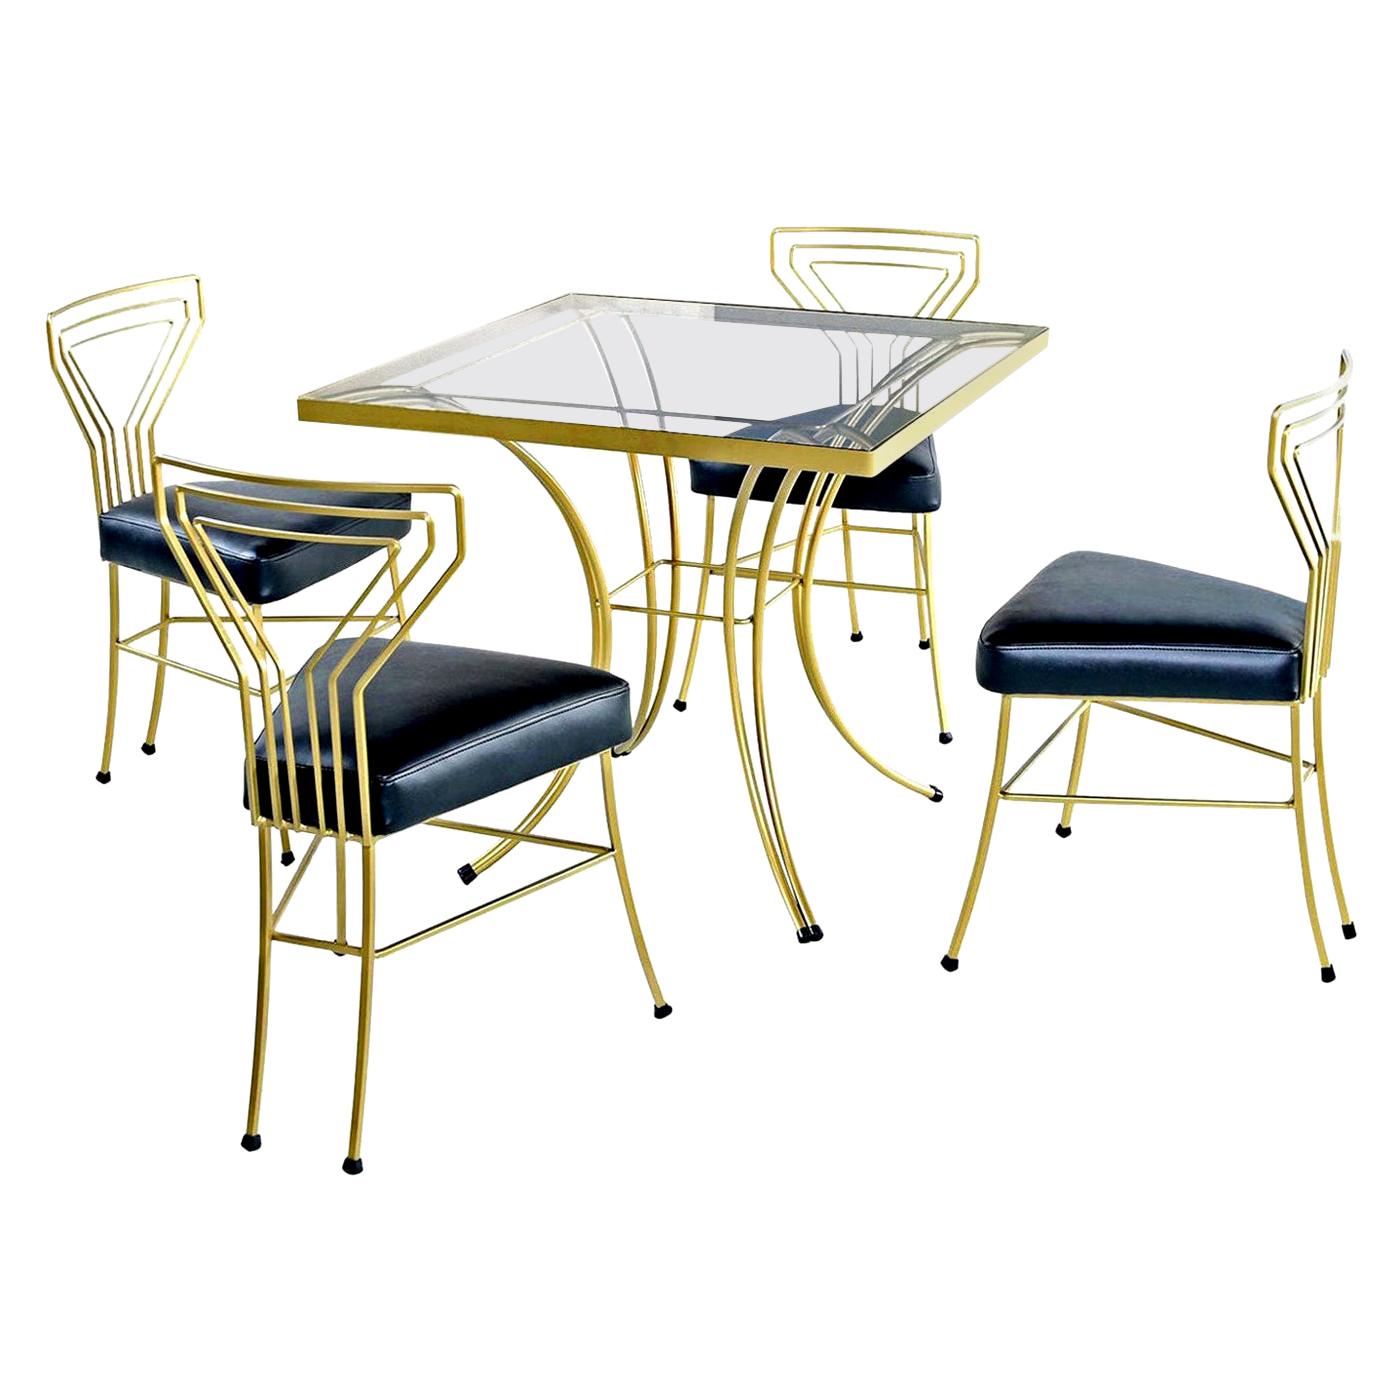 Service de table Art Déco/moderne Salterini en métal doré peint en or avec plateau en verre